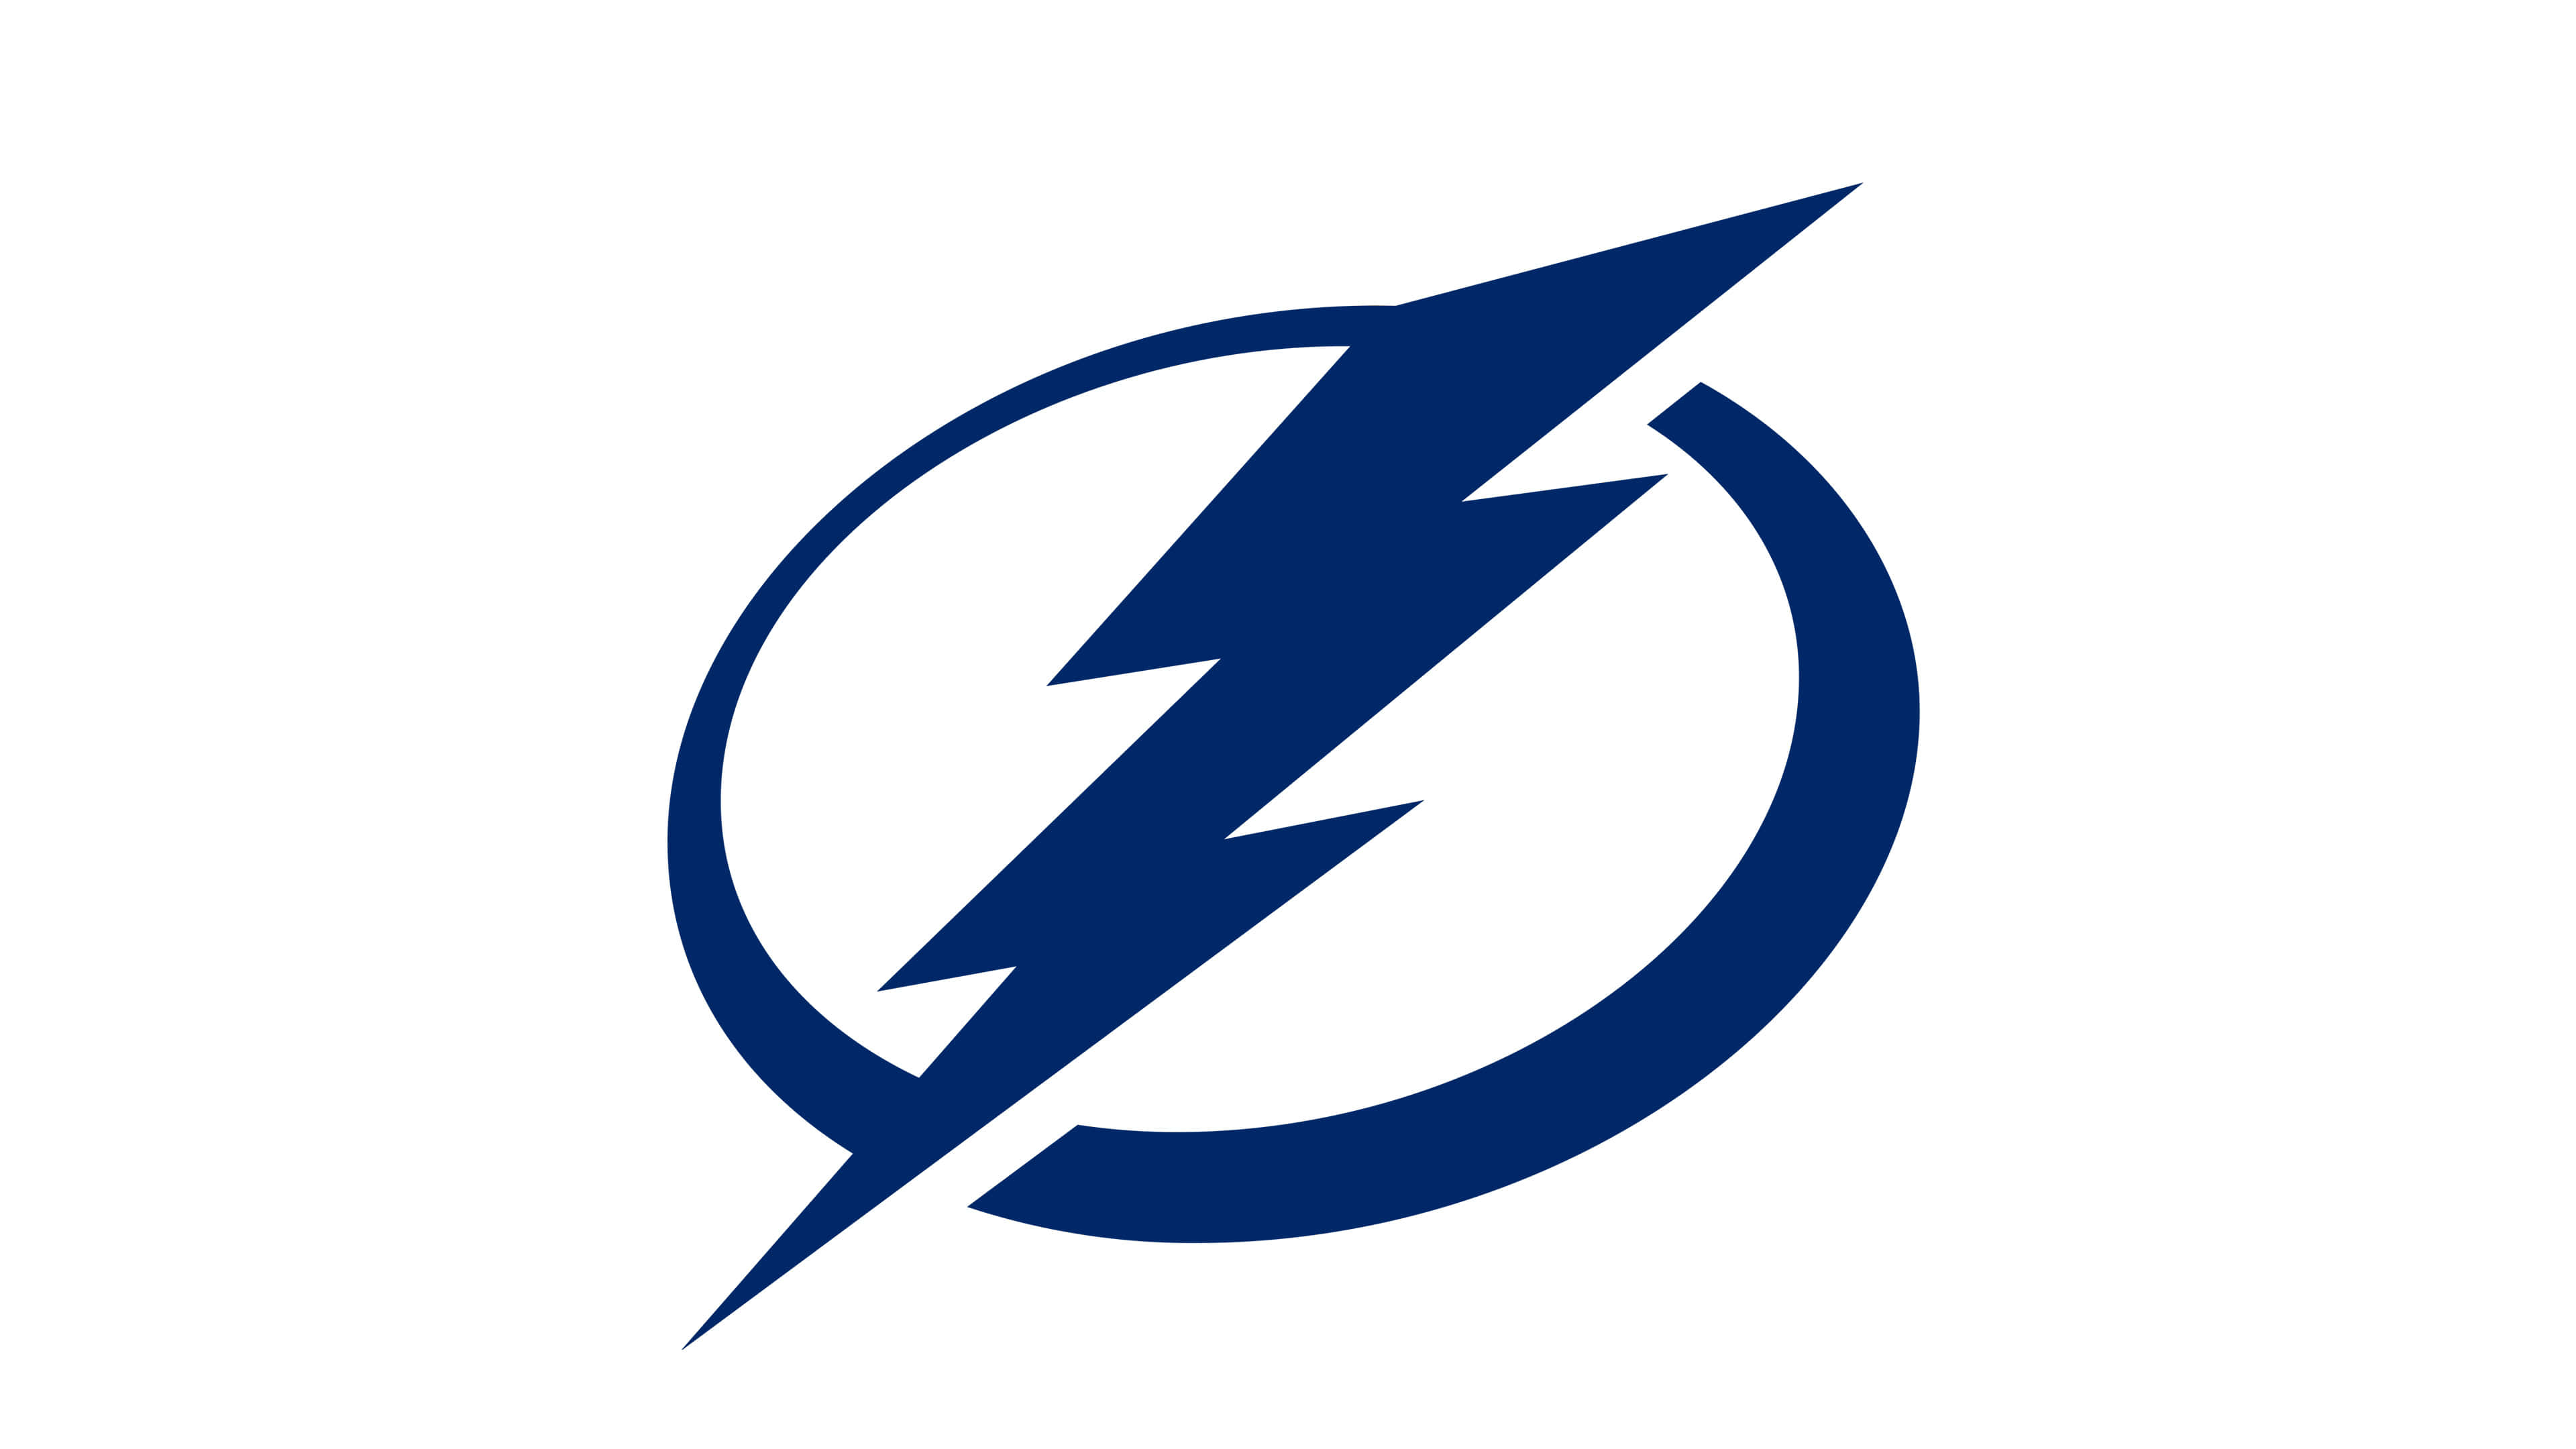 Tampa Bay Lightning NHL Logo UHD 4K Wallpaper | Pixelz